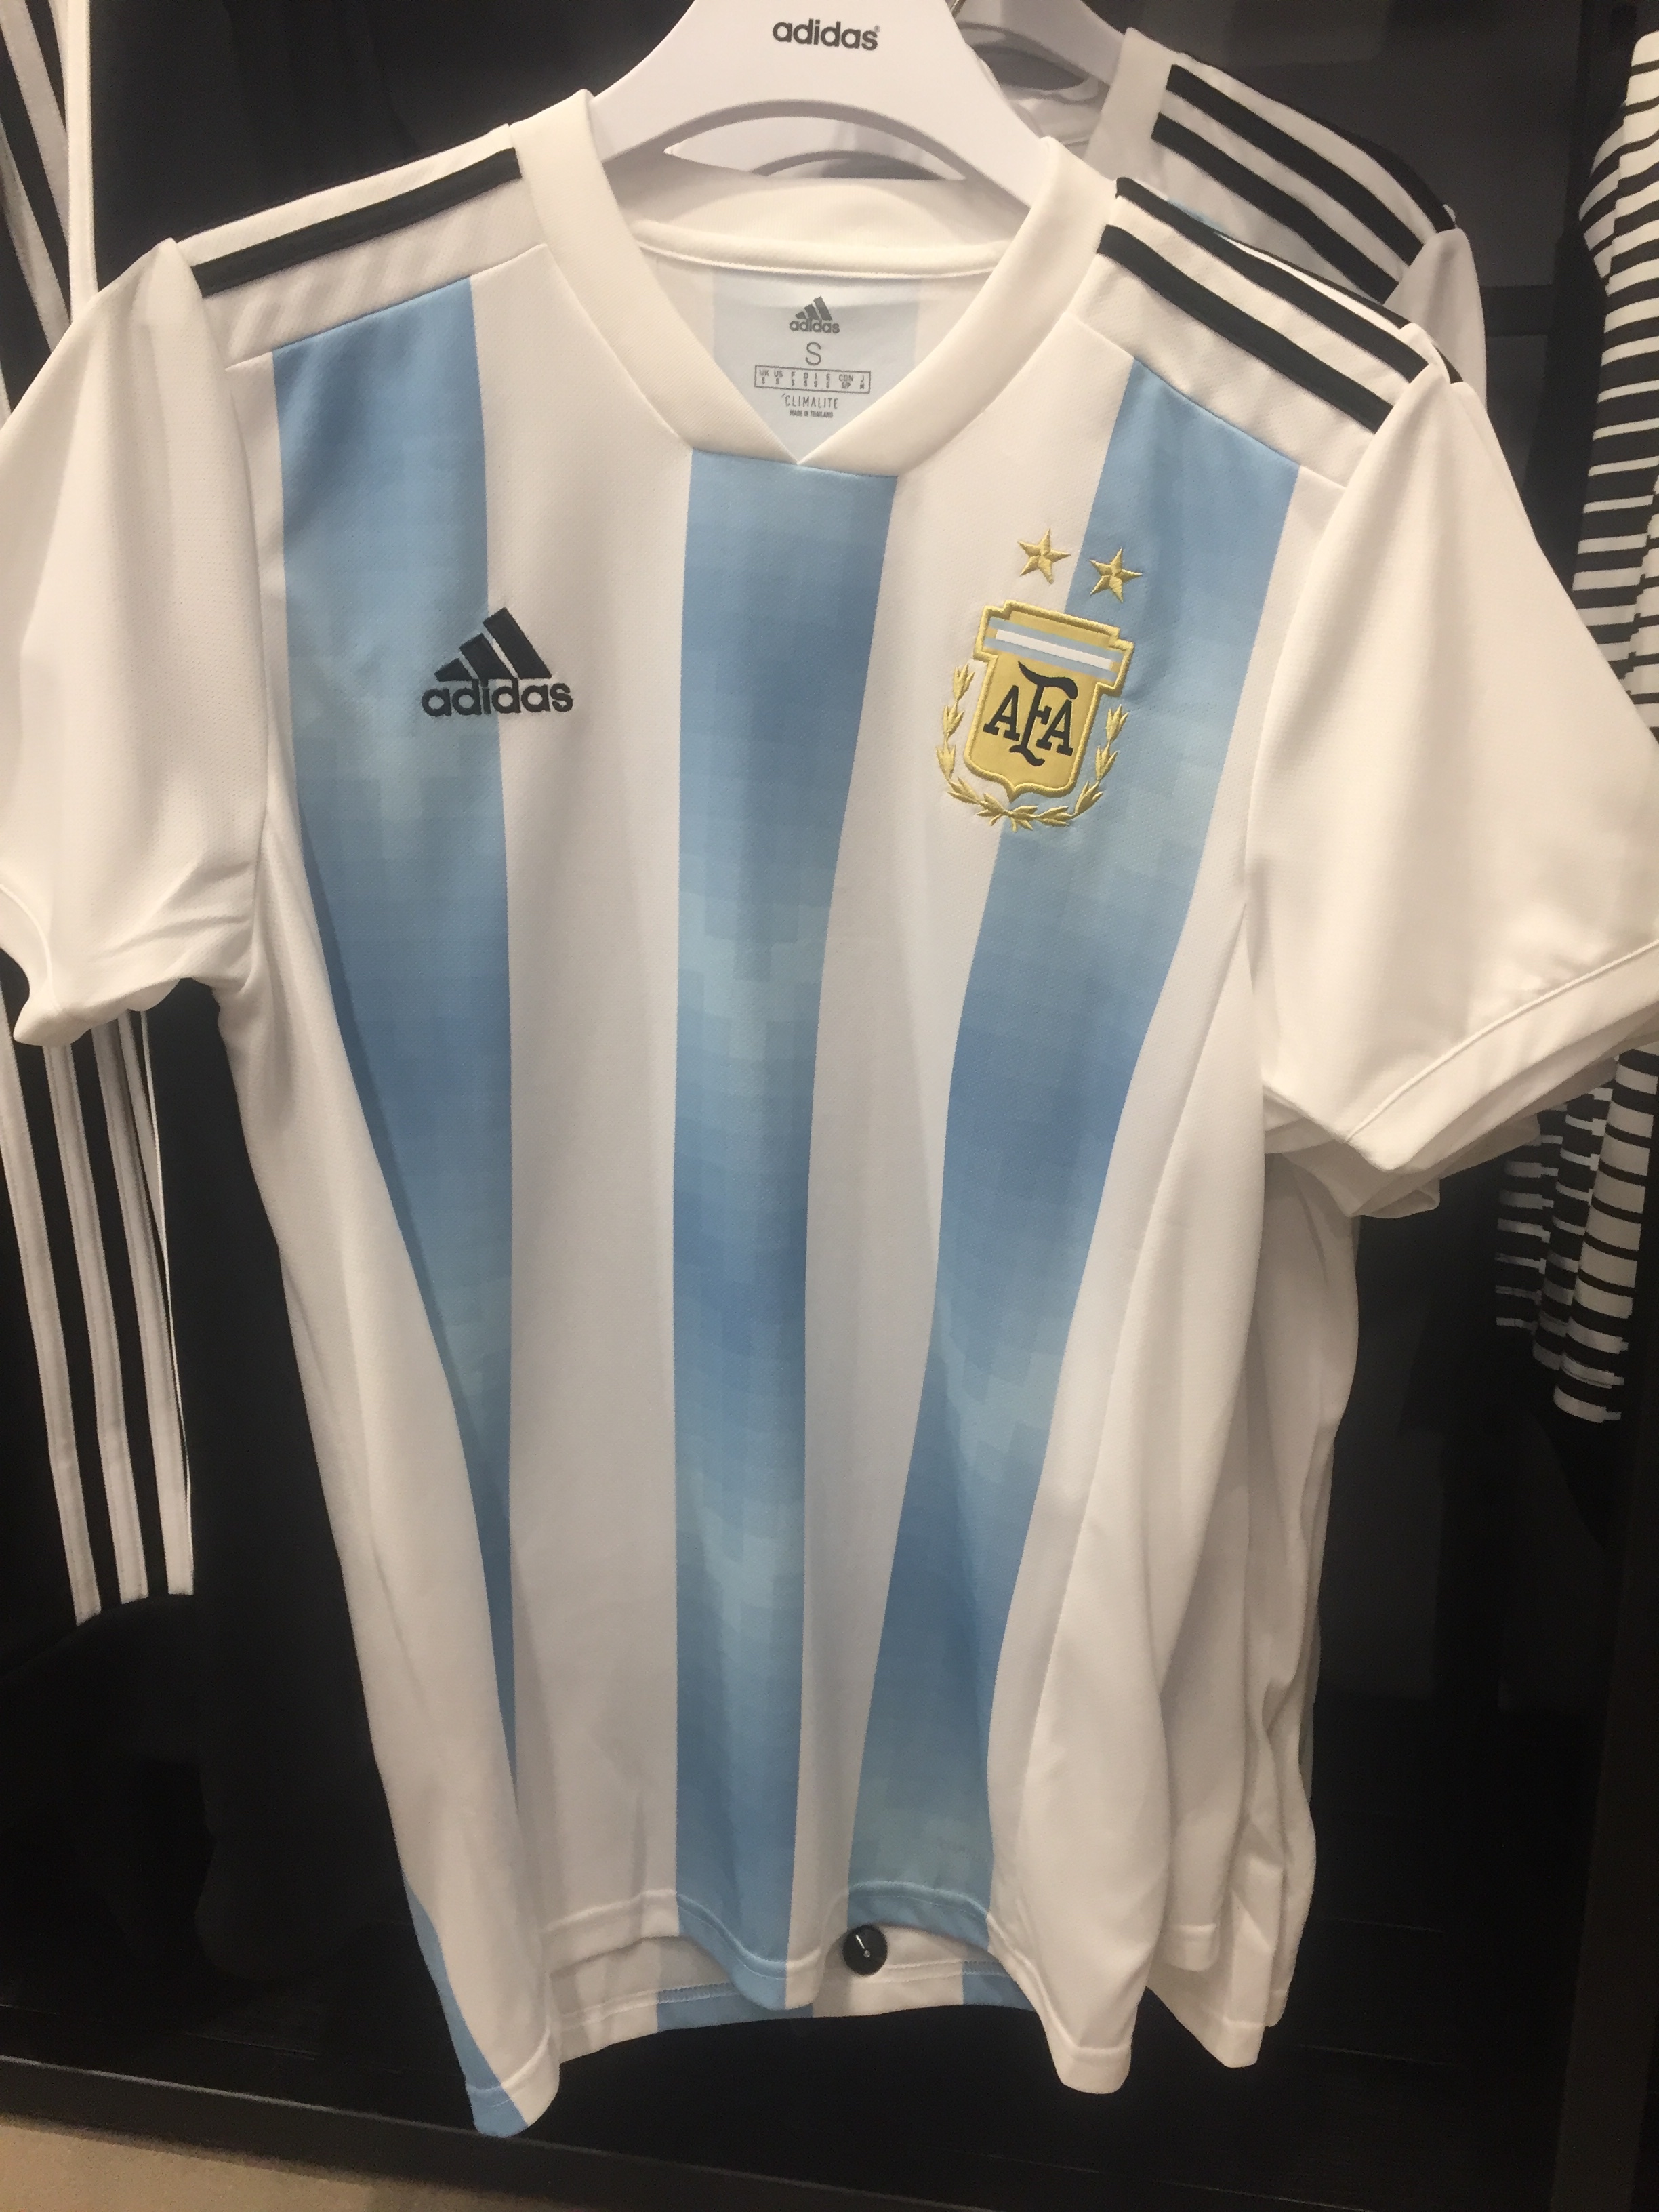 adidas estate 2018 argentina